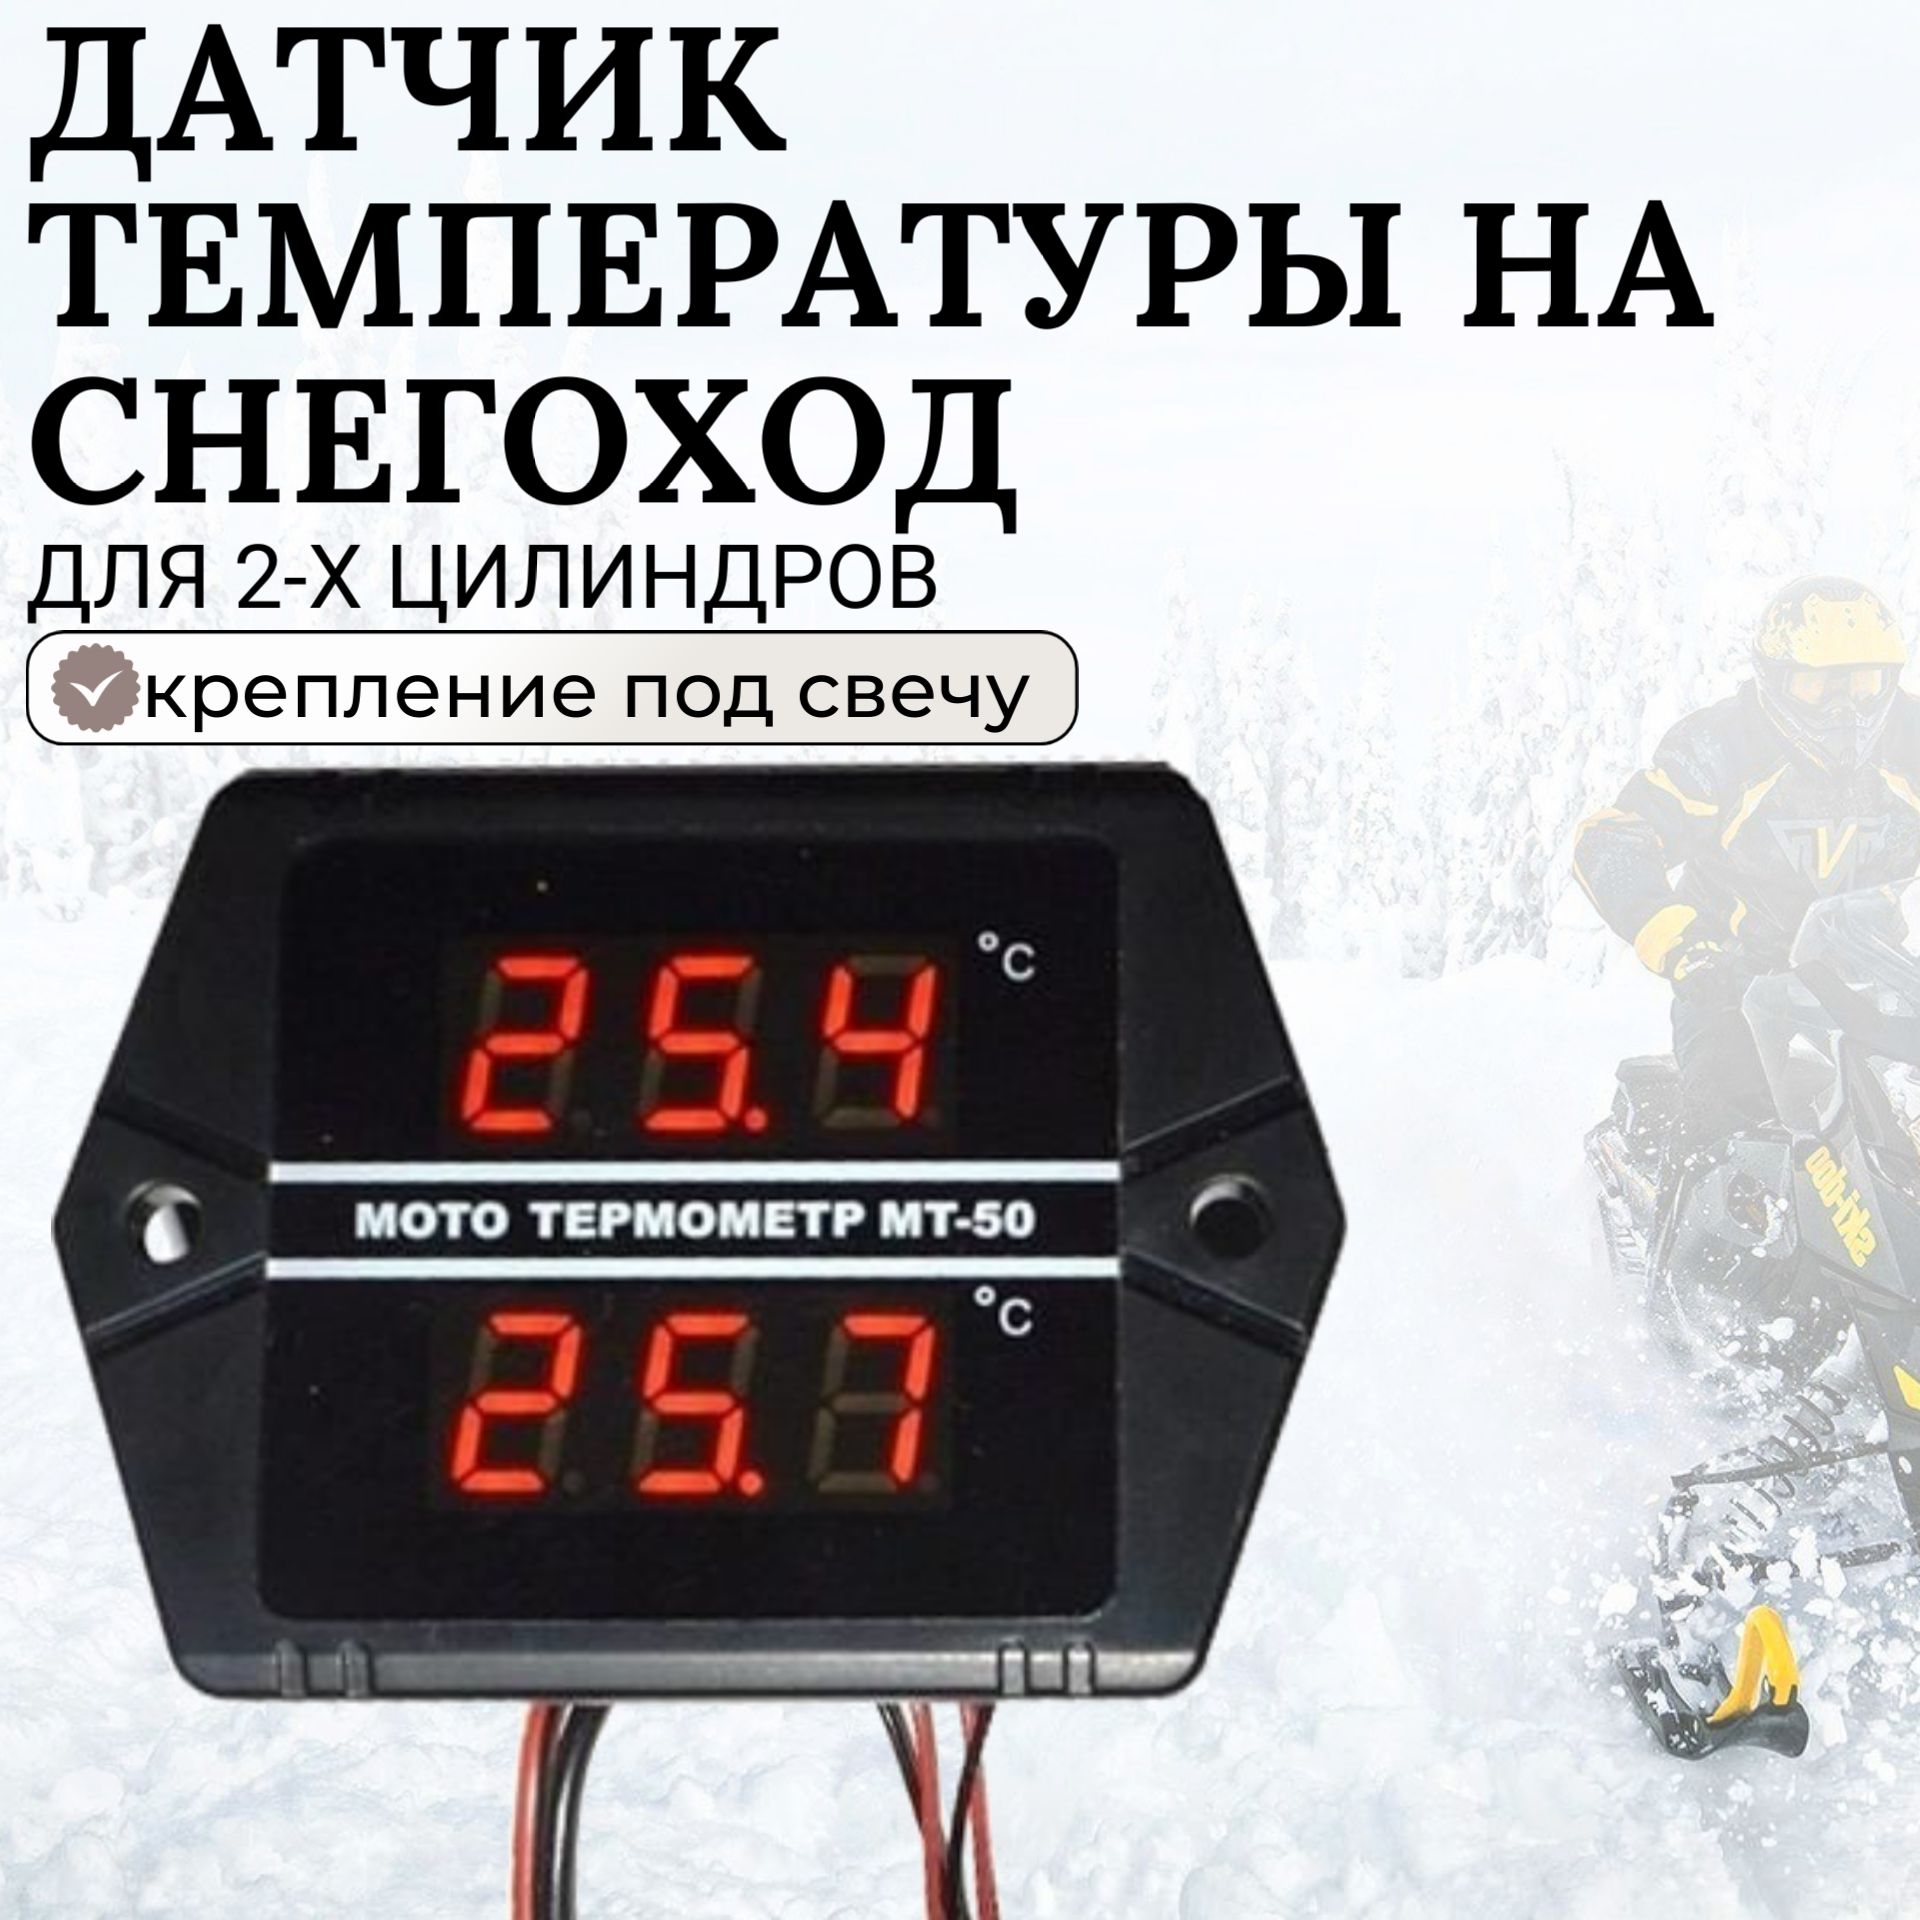 Датчик температуры для снегохода PITONb в Перми - купить, фото, характеристики